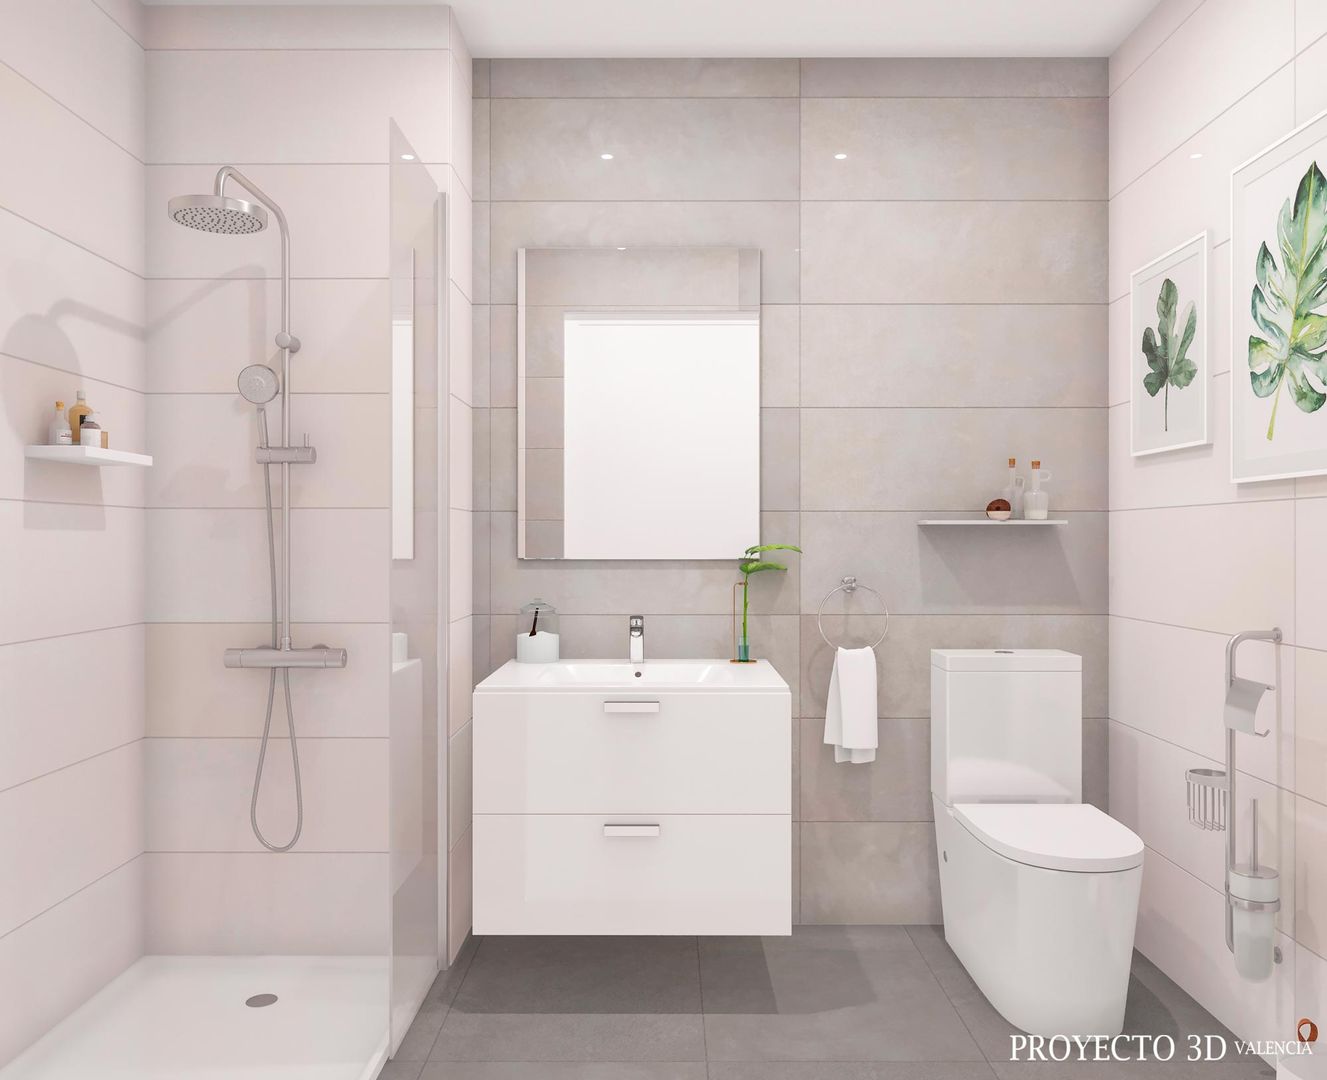 Renders para promoción de viviendas de obra nueva, Proyecto 3D Valencia Renders Animaciones 3D Infografias Online Proyecto 3D Valencia Renders Animaciones 3D Infografias Online Modern style bathrooms Toilets